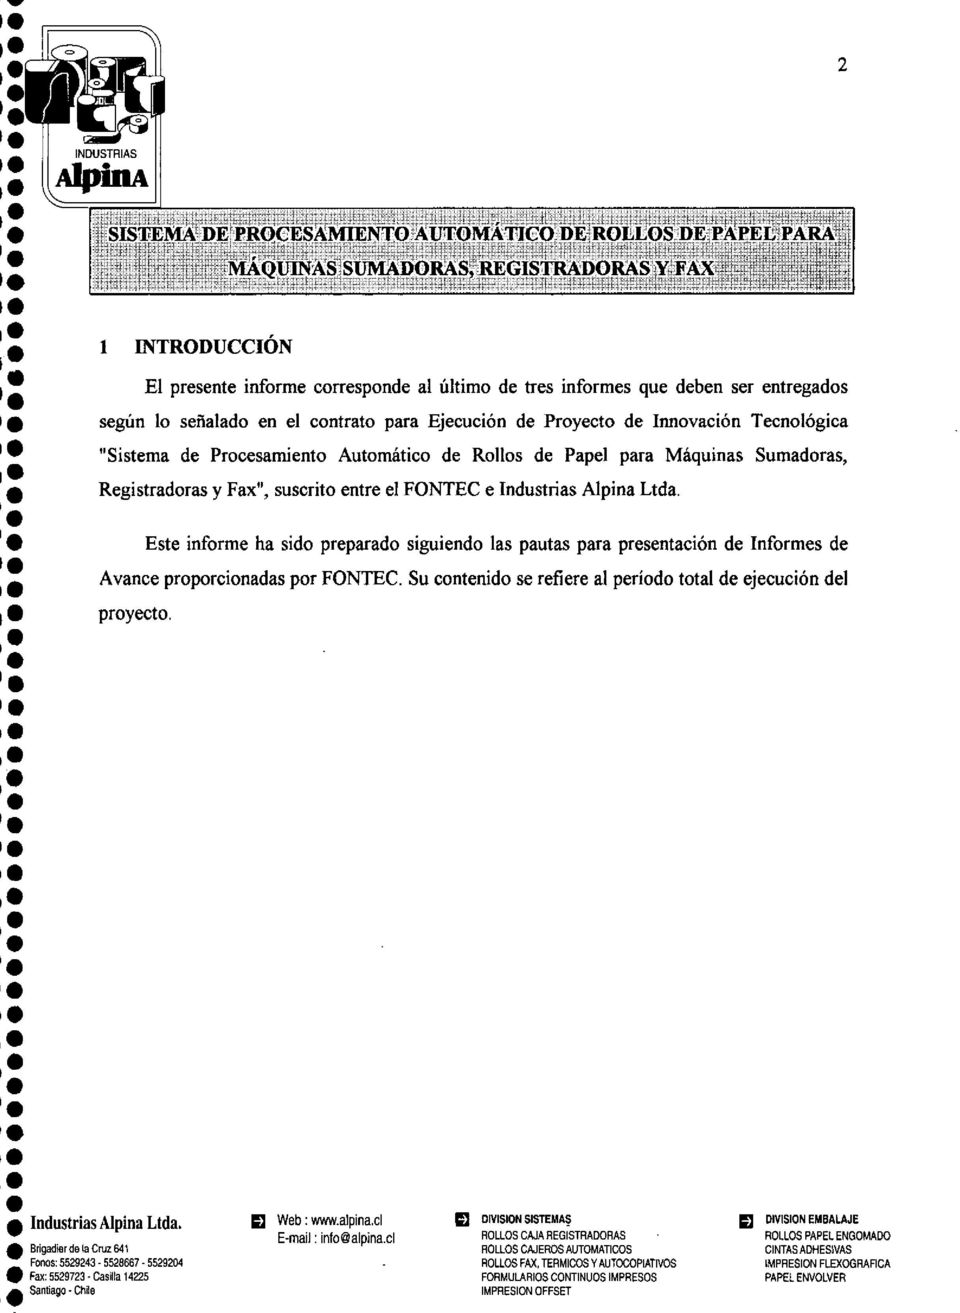 las pautas para prsntación d Informs d Avanc proporcionadas por FONTEC Su contnido s rfir a! príodo tota!